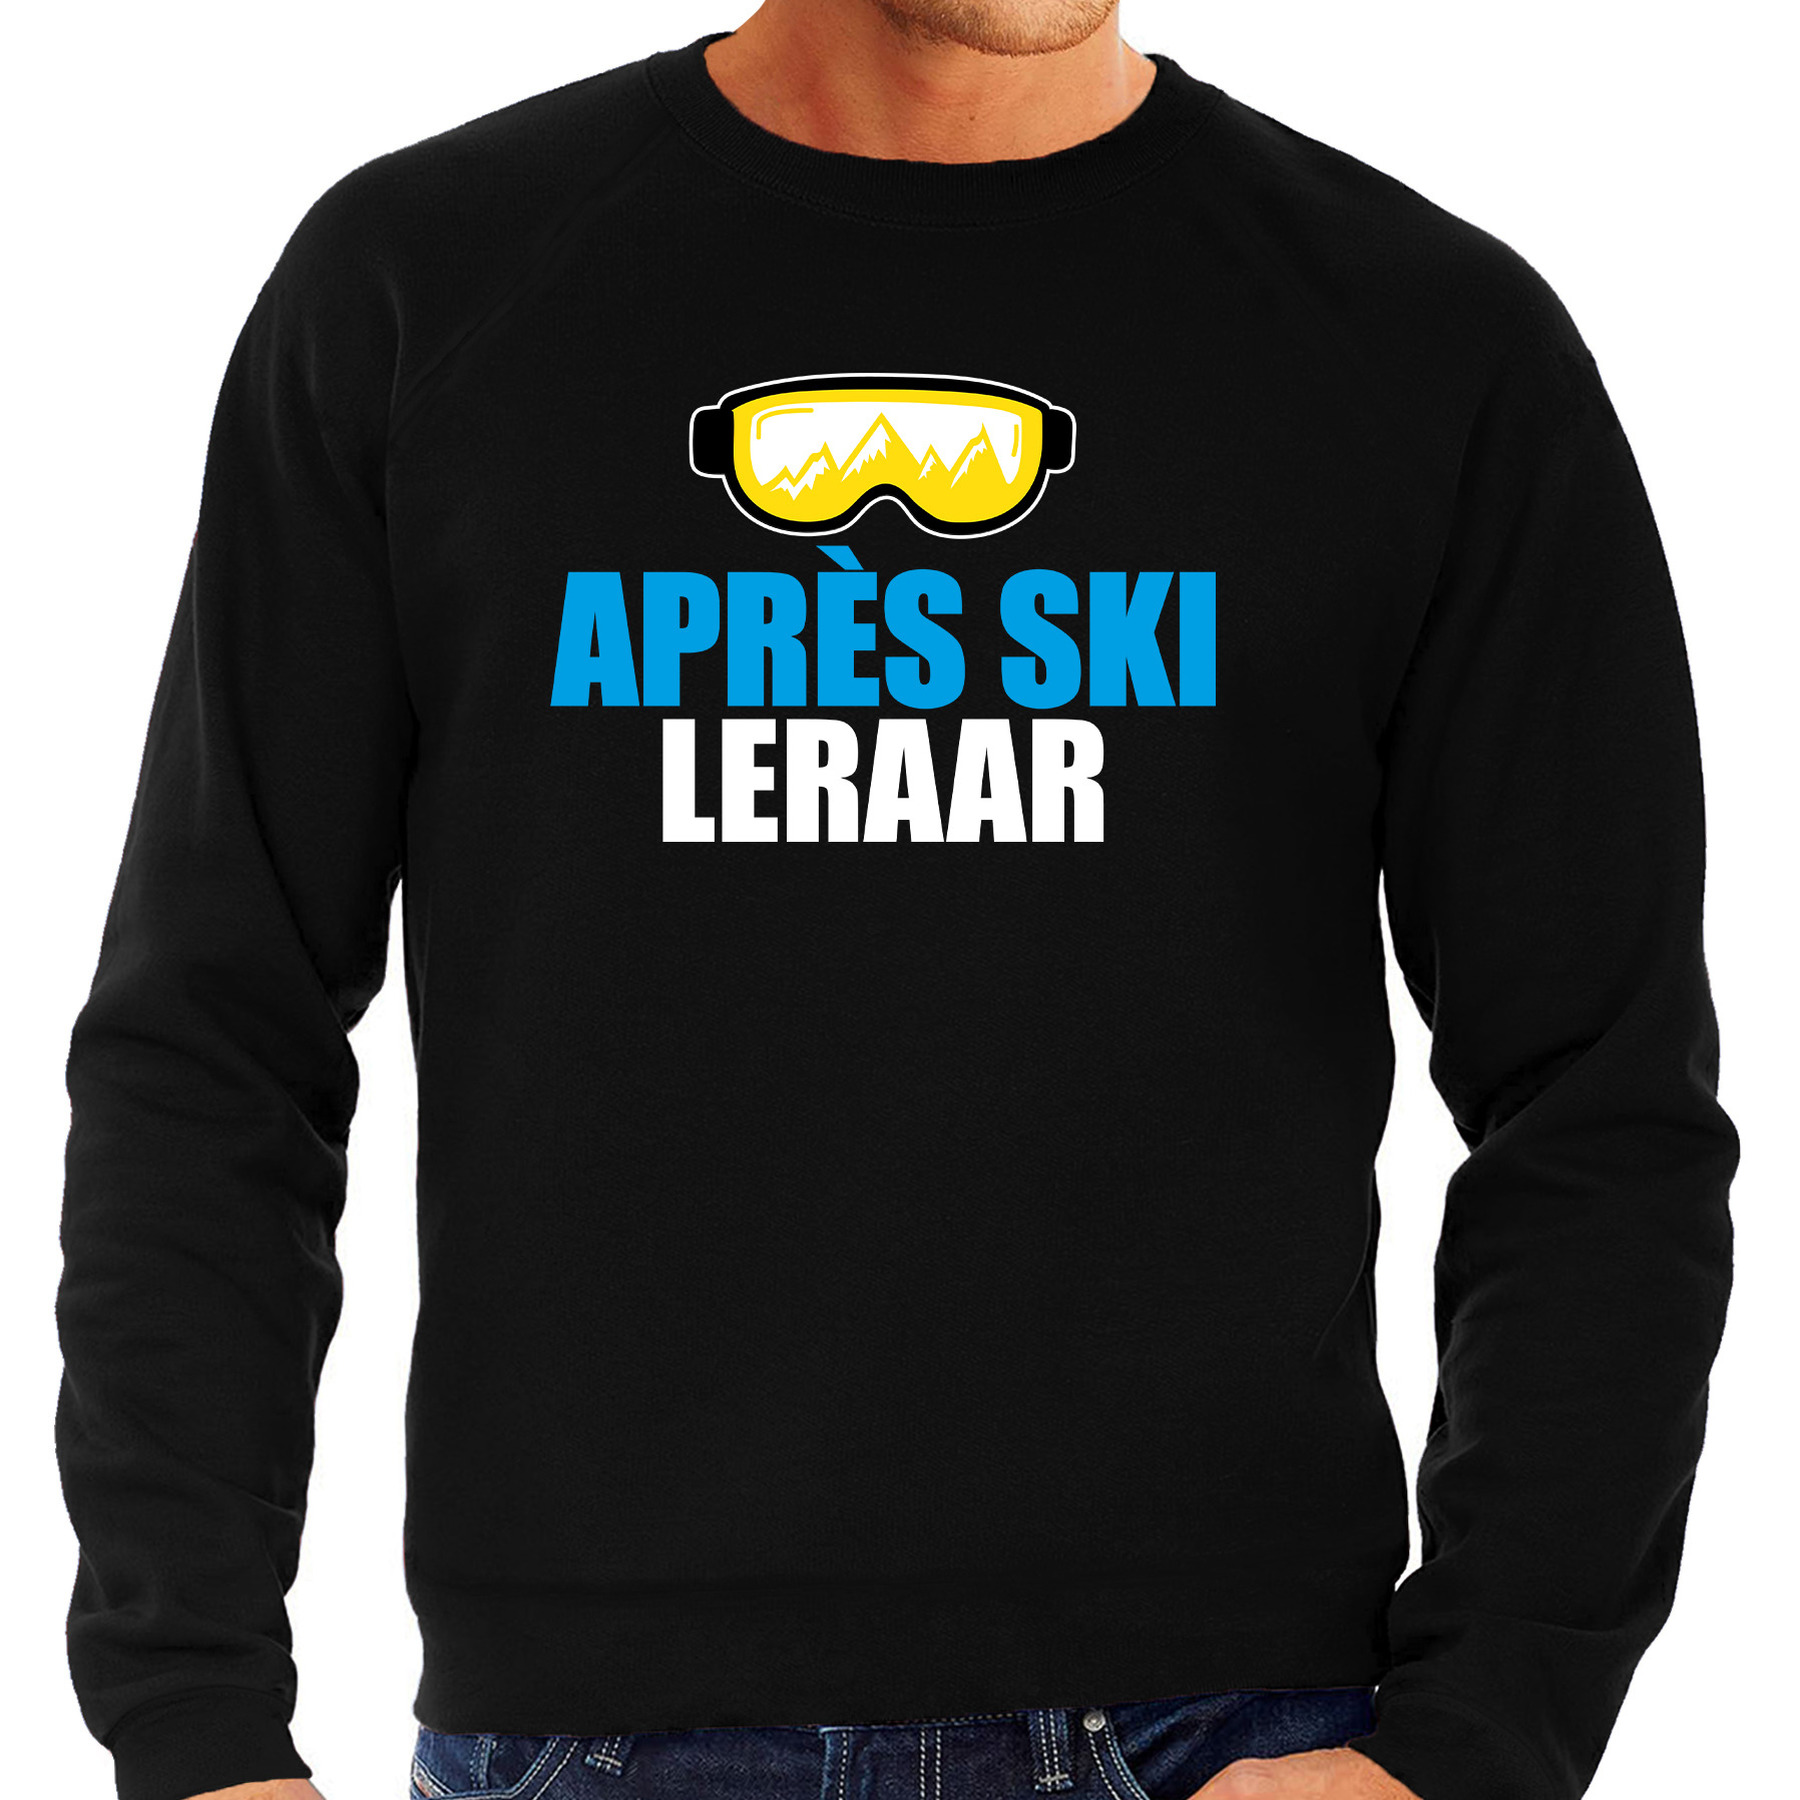 Apres ski trui Apres ski leraar zwart heren Wintersport sweater Foute apres ski outfit